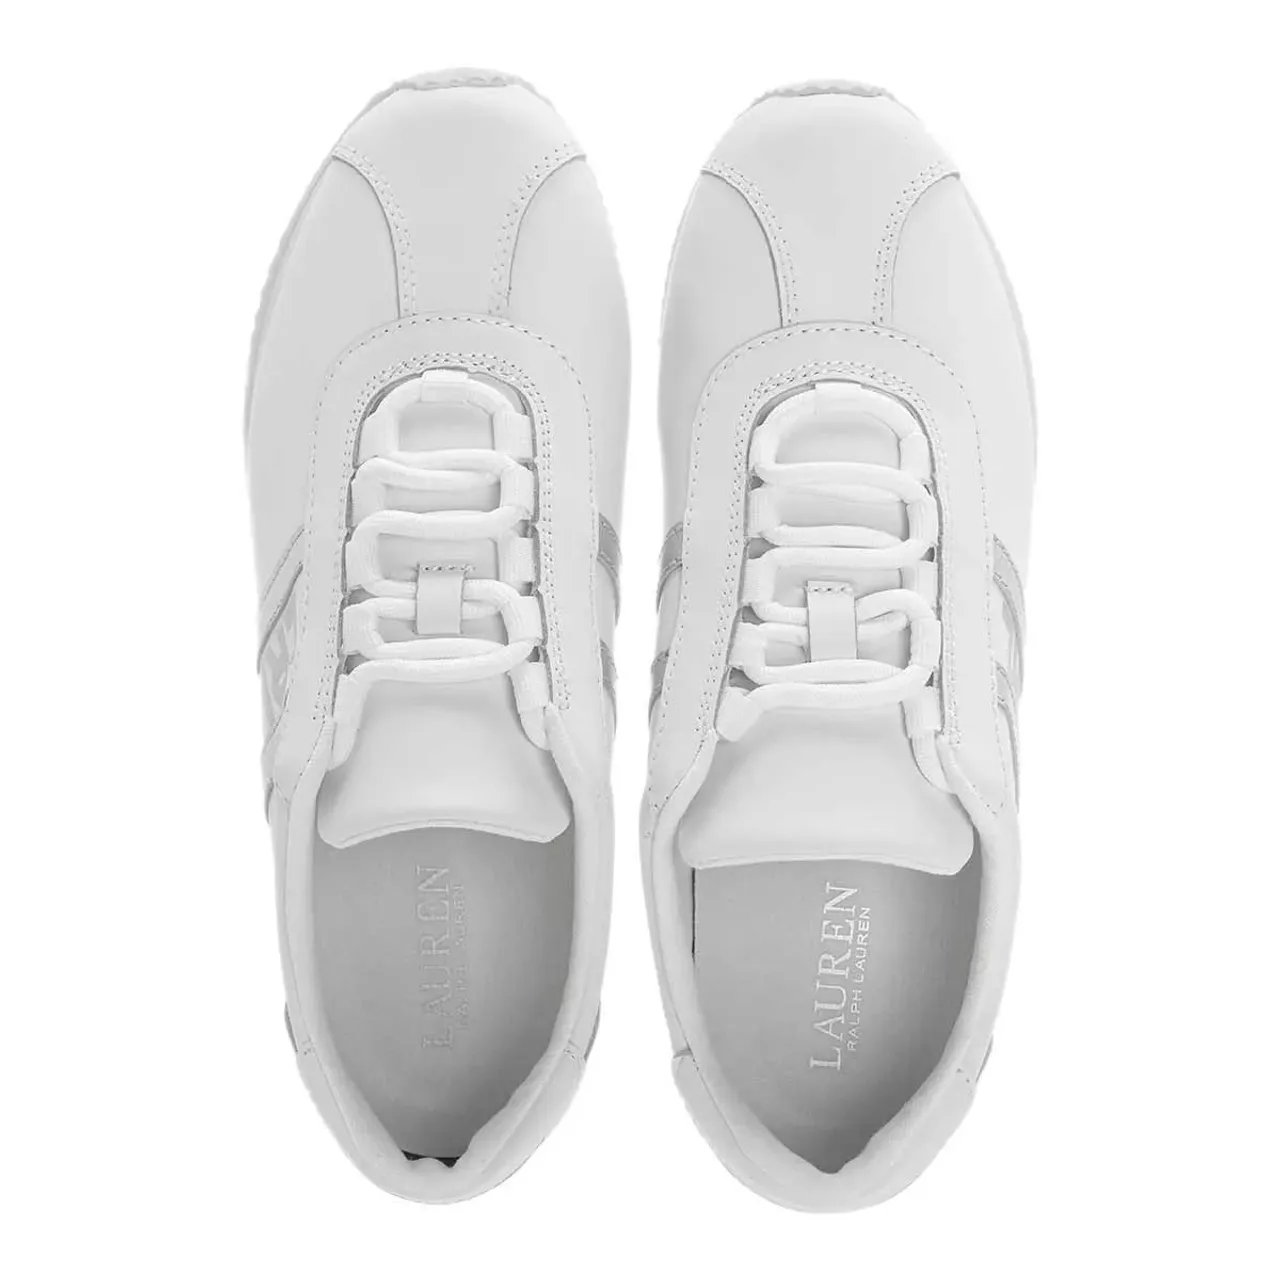 Lauren Ralph Lauren Sneakers - Cayden Sneakers Slip On